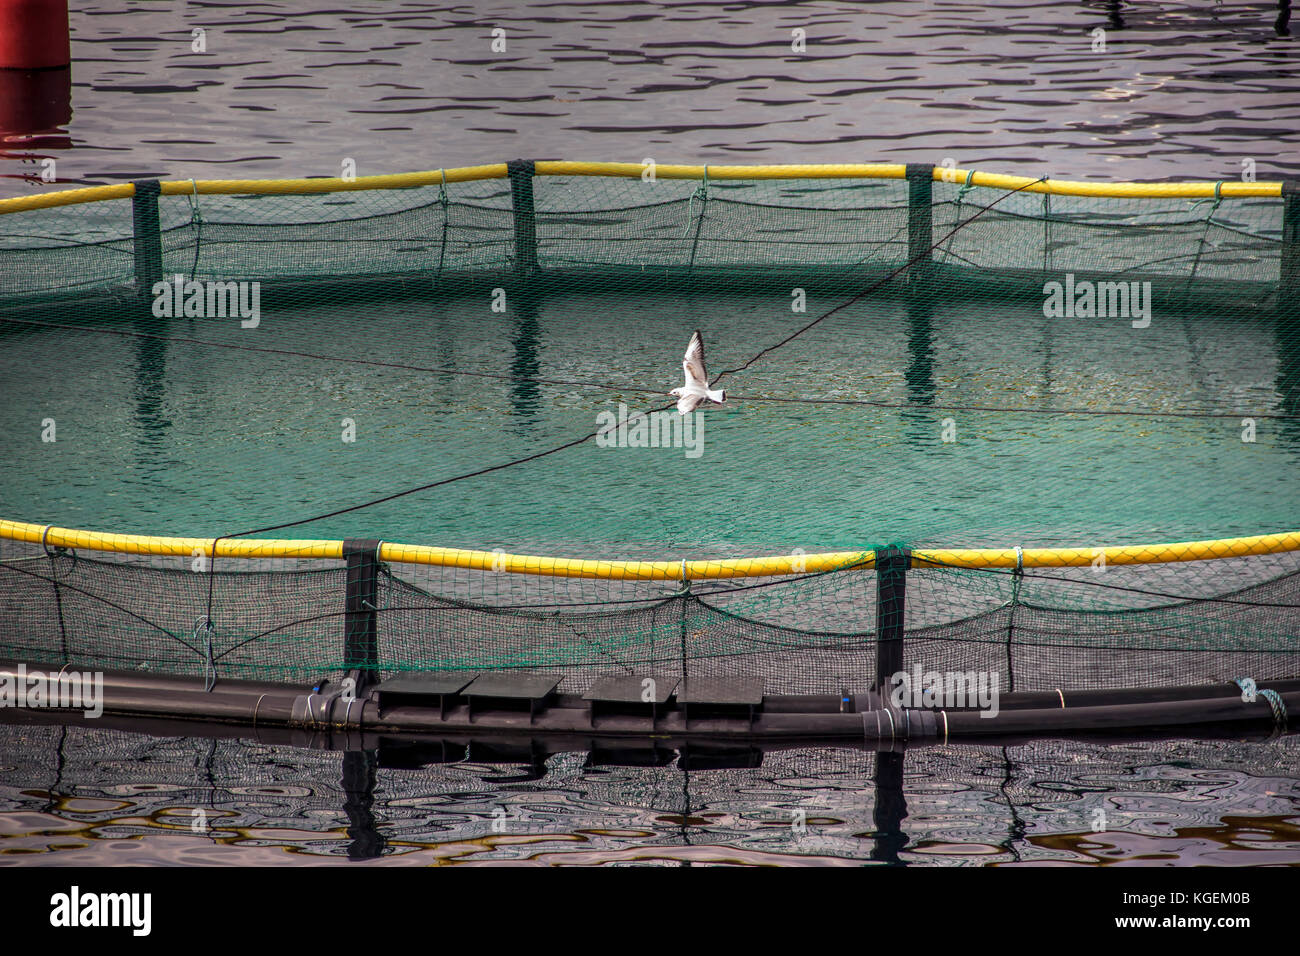 Baia di Kotor, Montenegro - un gabbiano volare sopra il galleggiamento vivai di pesci Foto Stock